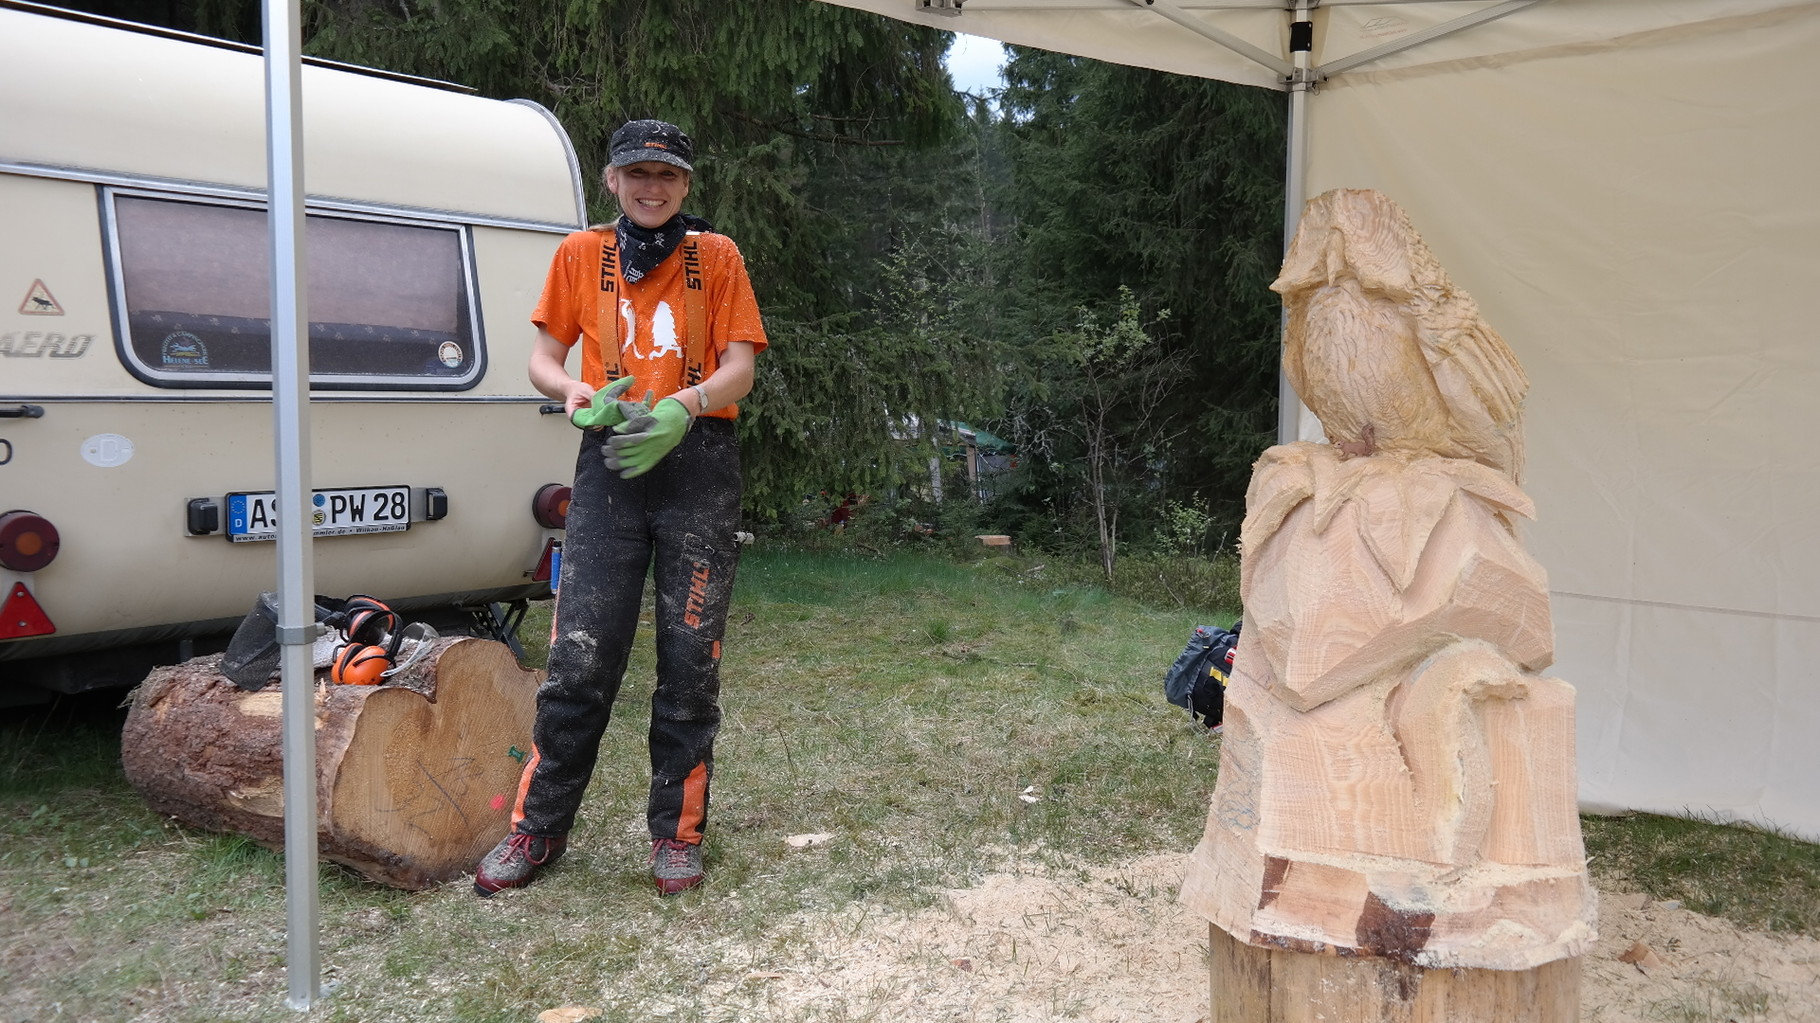 Carving-Event in Grünbach - Schnitzen mit der Kettensäge - Allgäu-Carving by Martina Gast